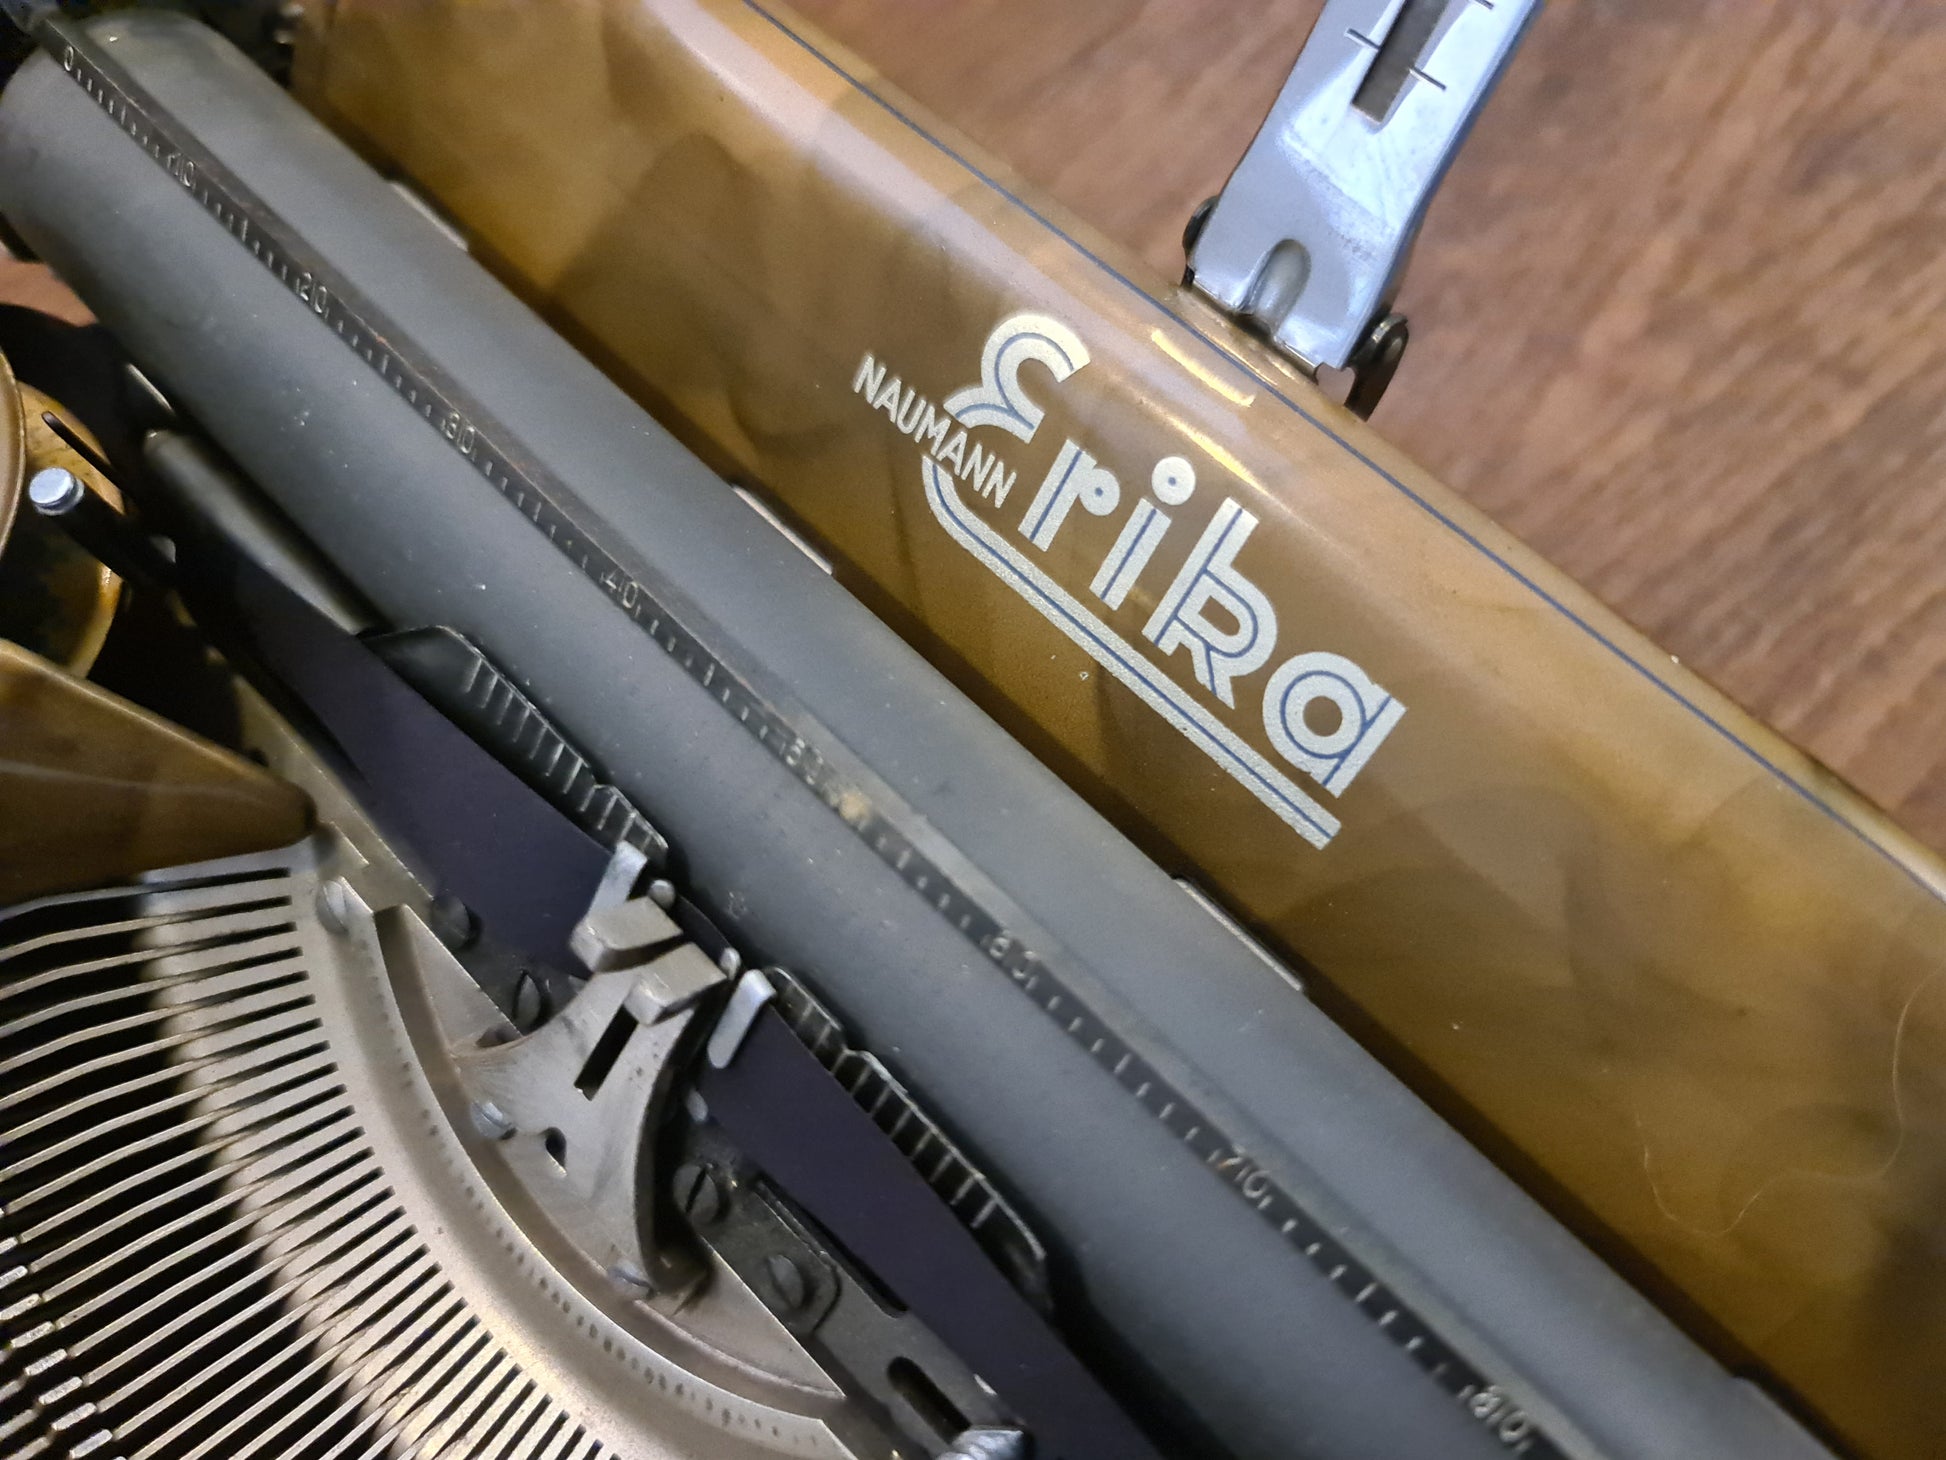 RARE Erika 5 GOLD Vintage Manual Typewriter, Professionally Serviced - ElGranero Typewriter.Company